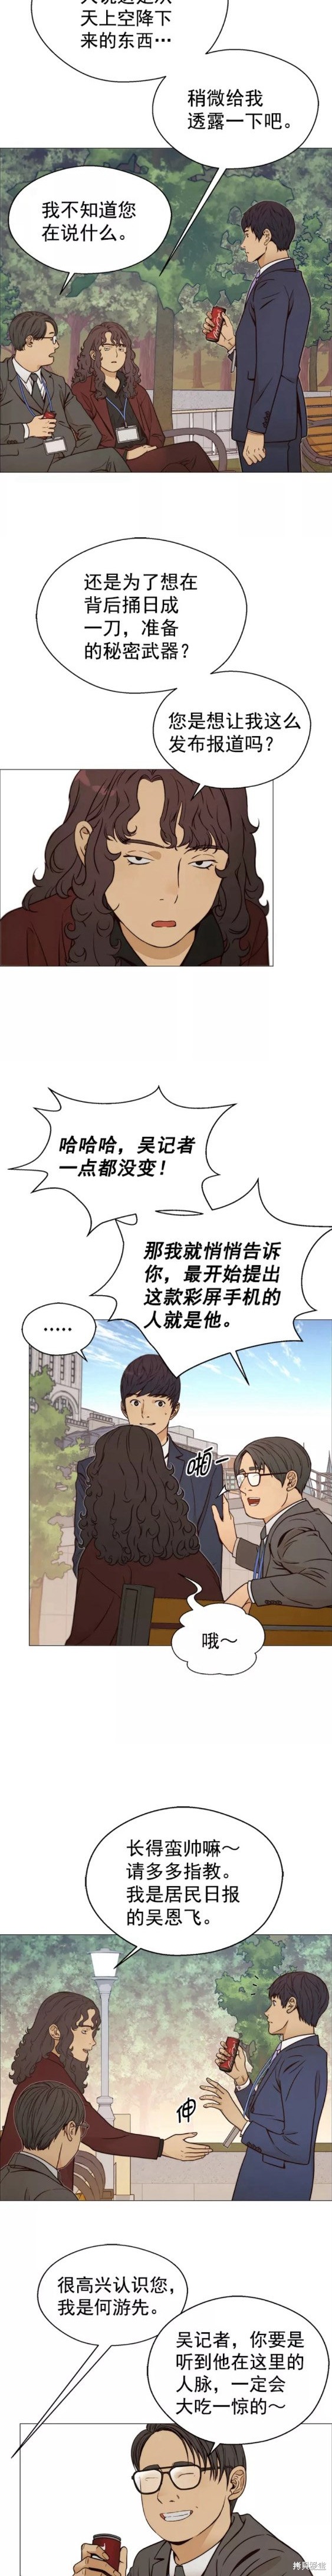 男子汉漫画,第117话14图